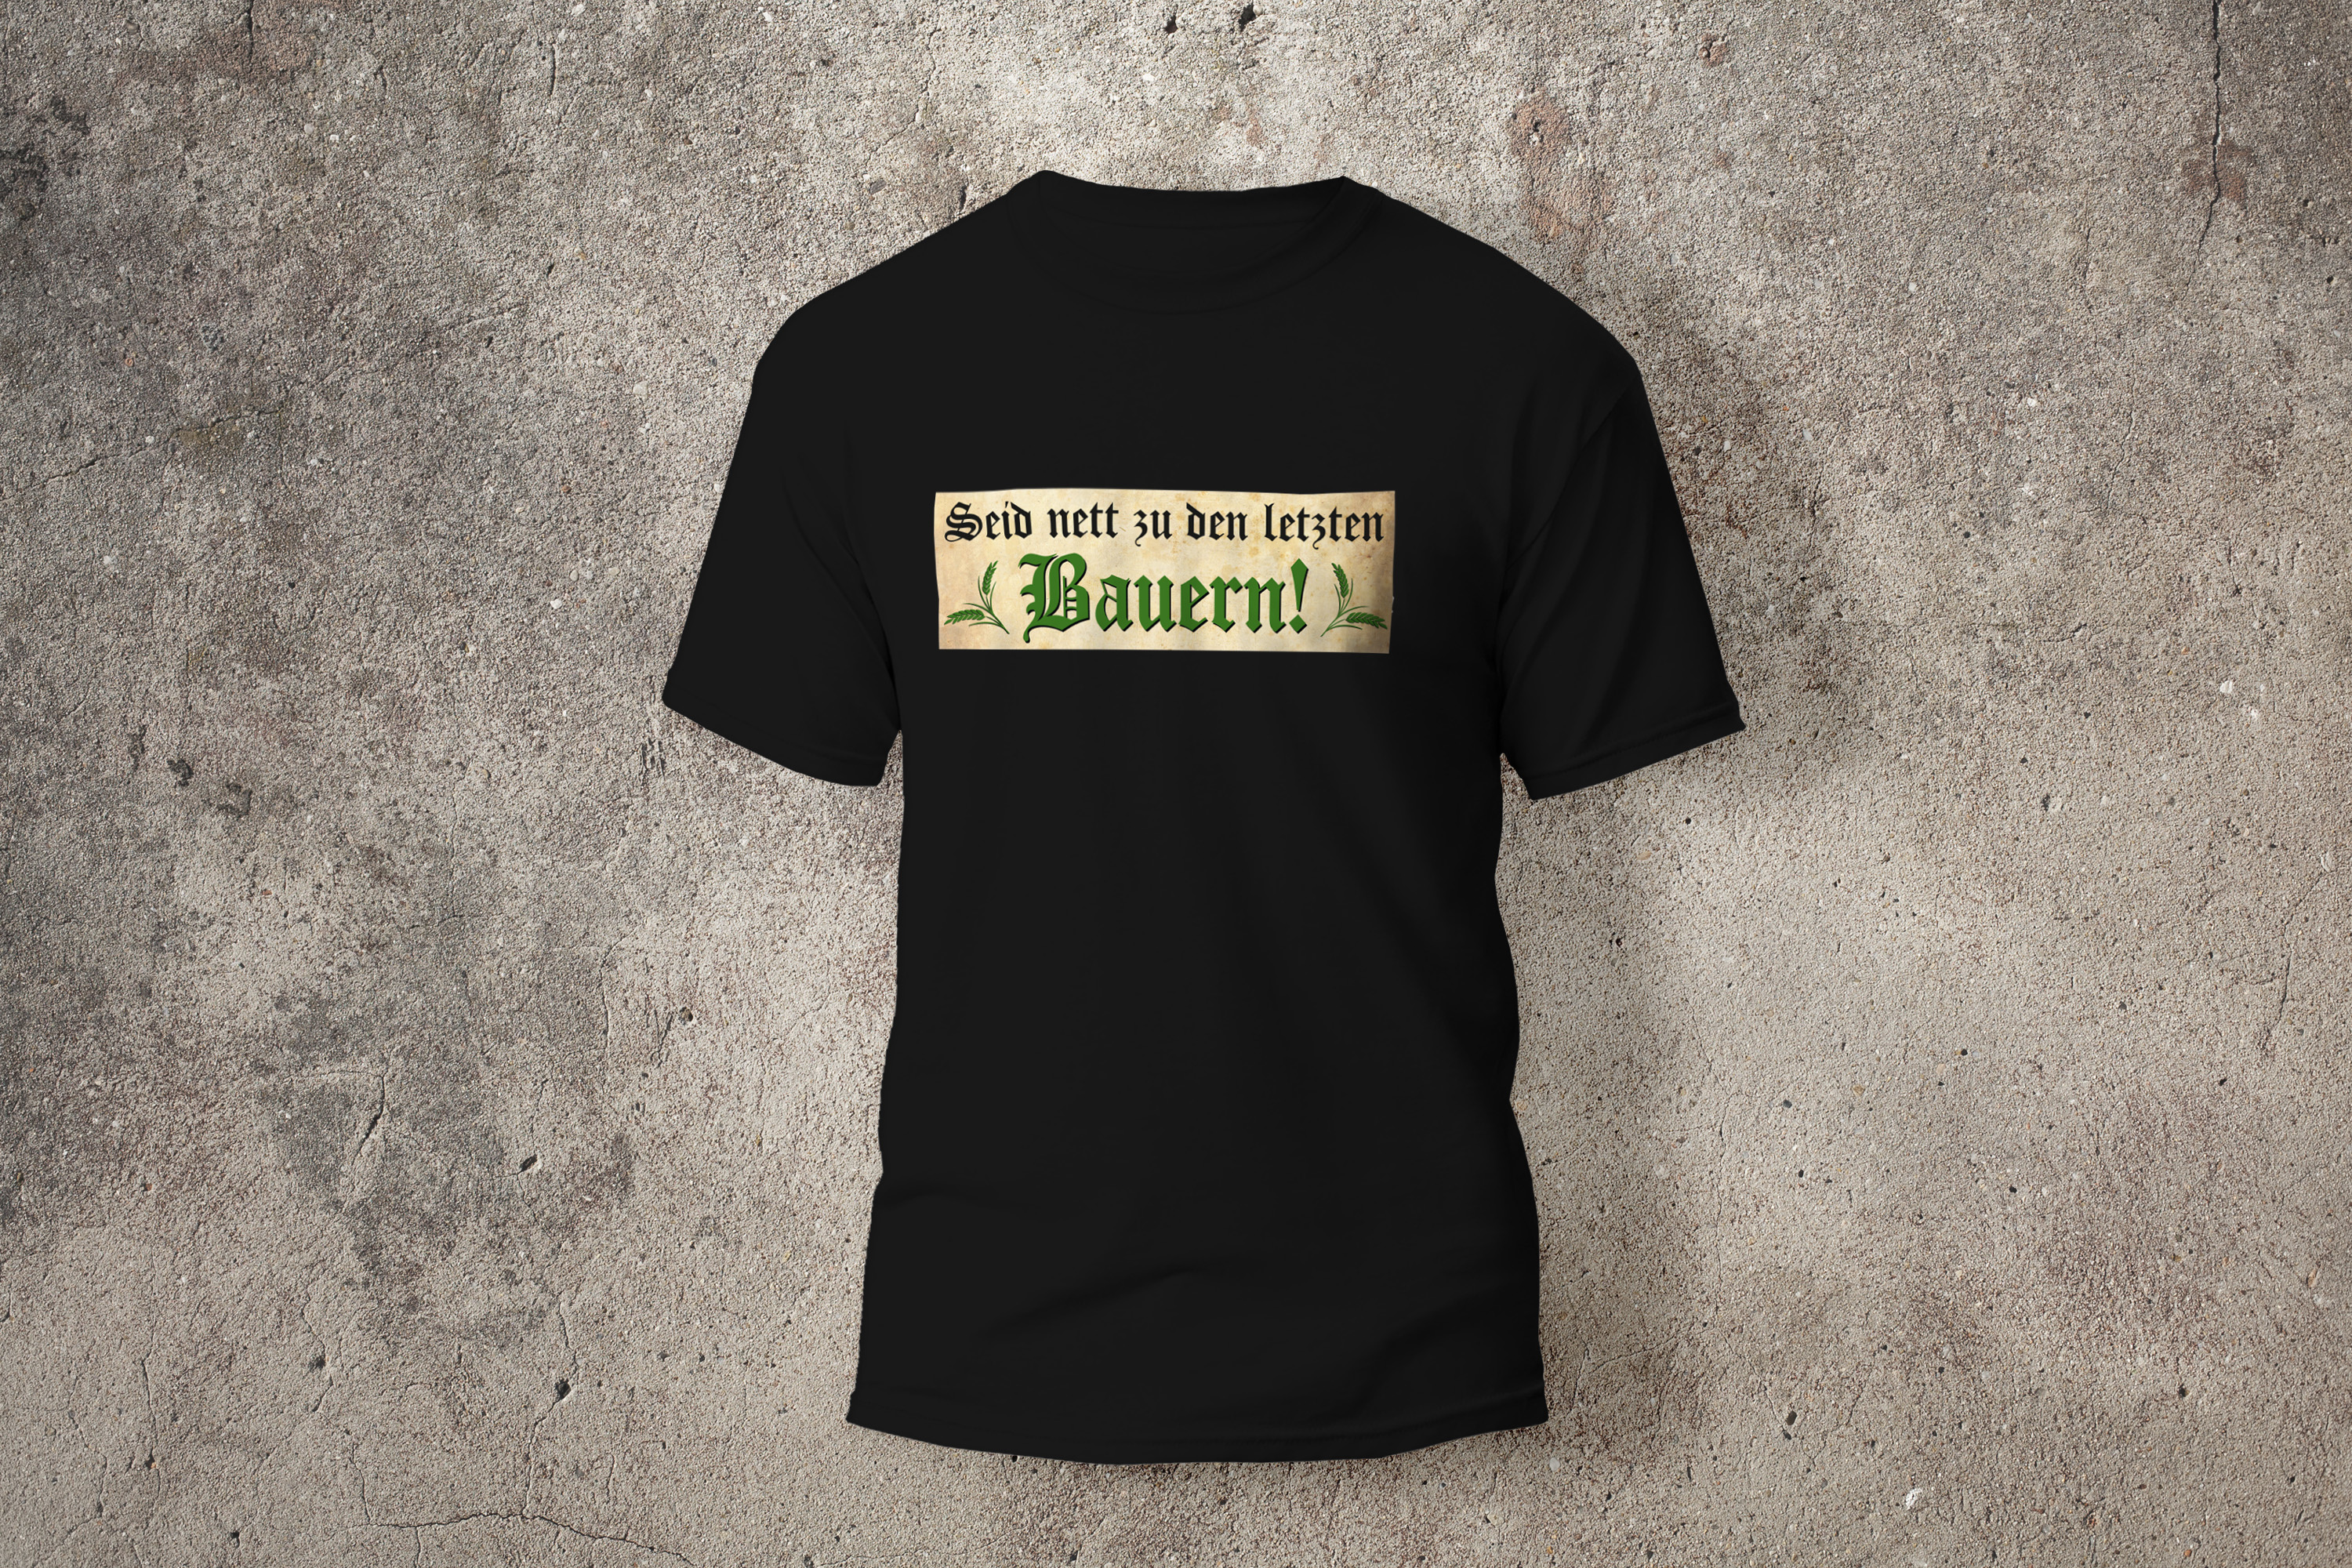 T-Shirt Unisex "Seid nett zu den letzten Bauern!" schwarz